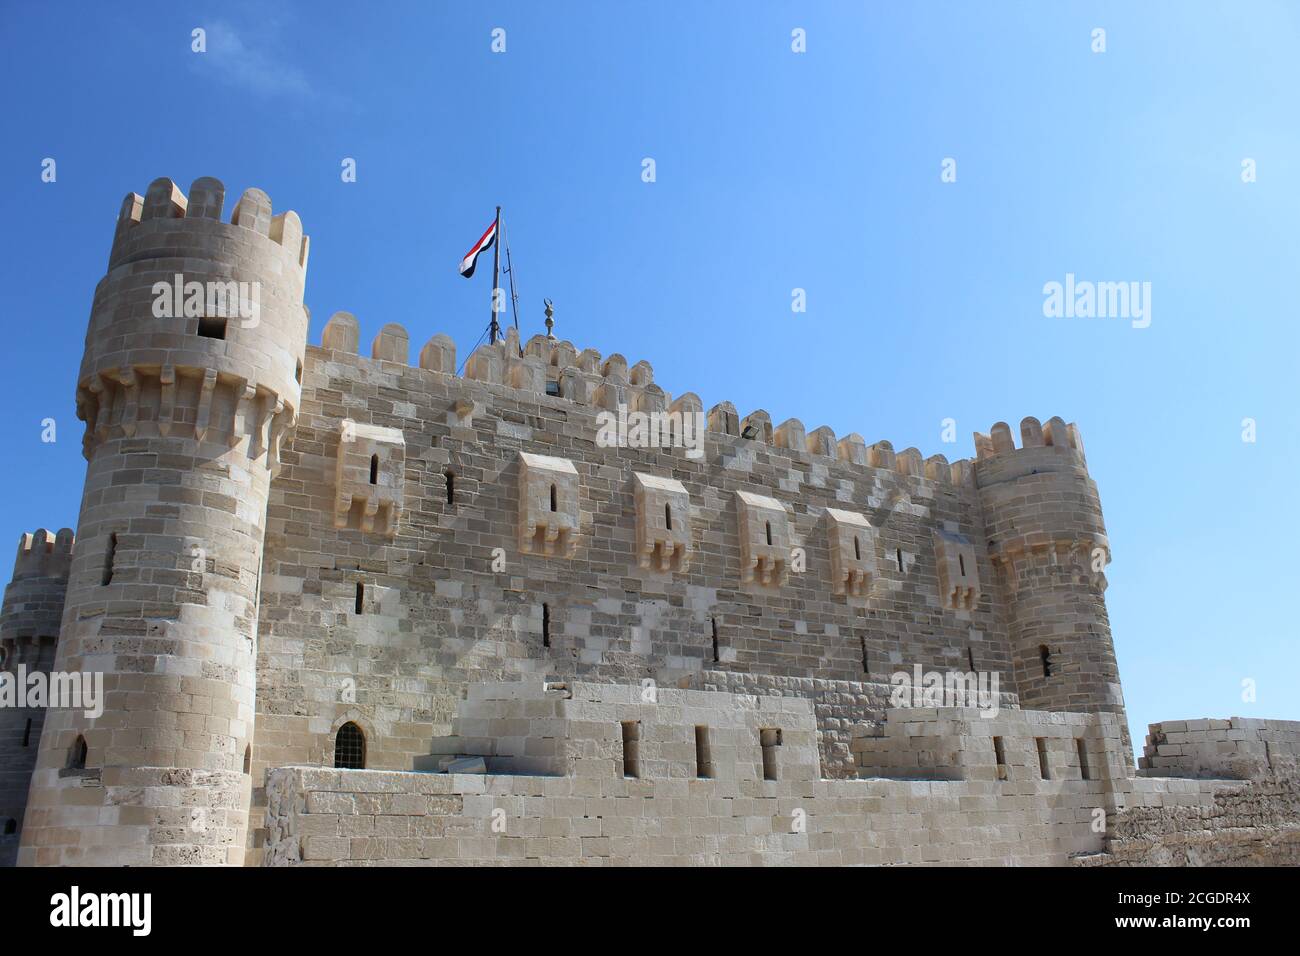 La citadelle de Qaitbay Alexandrie, à l'exact emplacement du phare  d'Alexandrie 7ème merveille du monde - SENSOUSSI